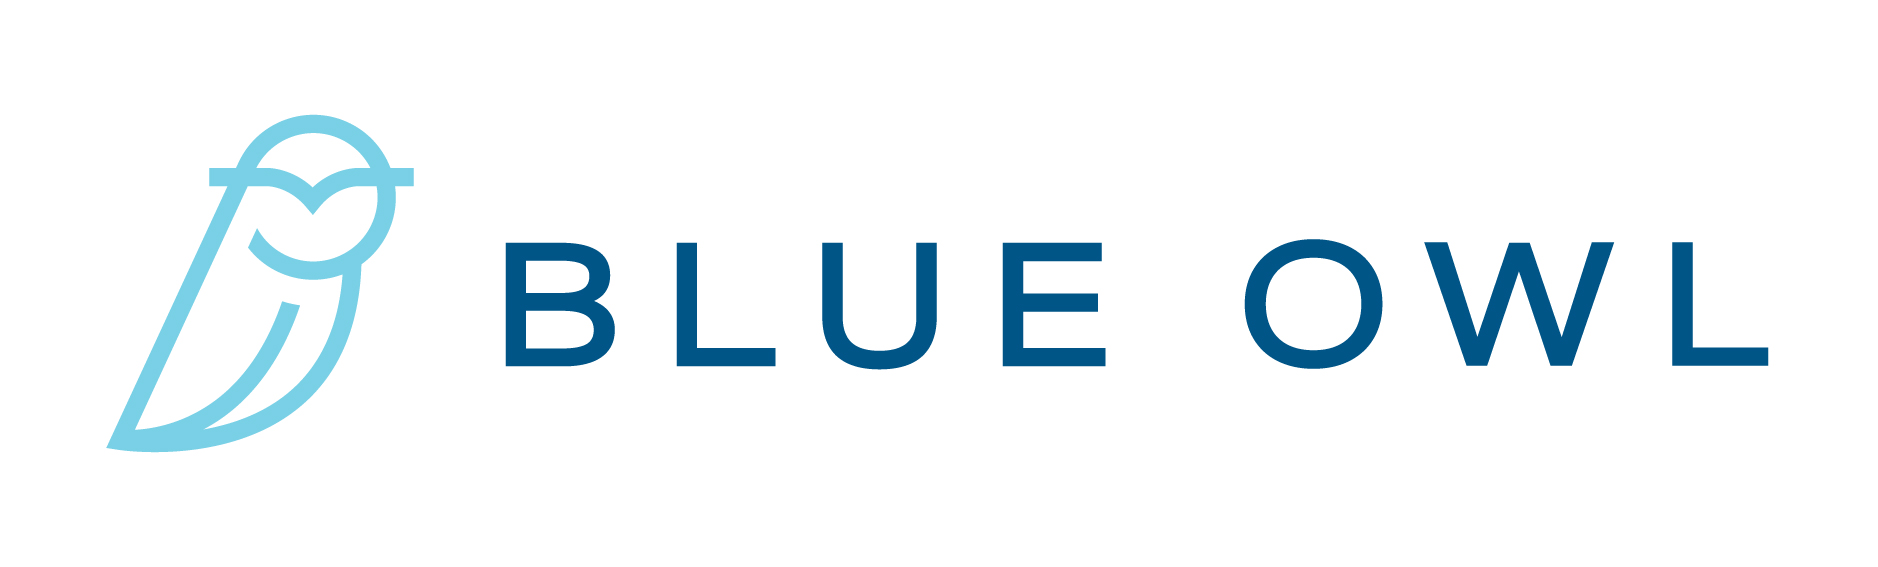 BlueOwlLogo-OnWhite-horizontal.jpg